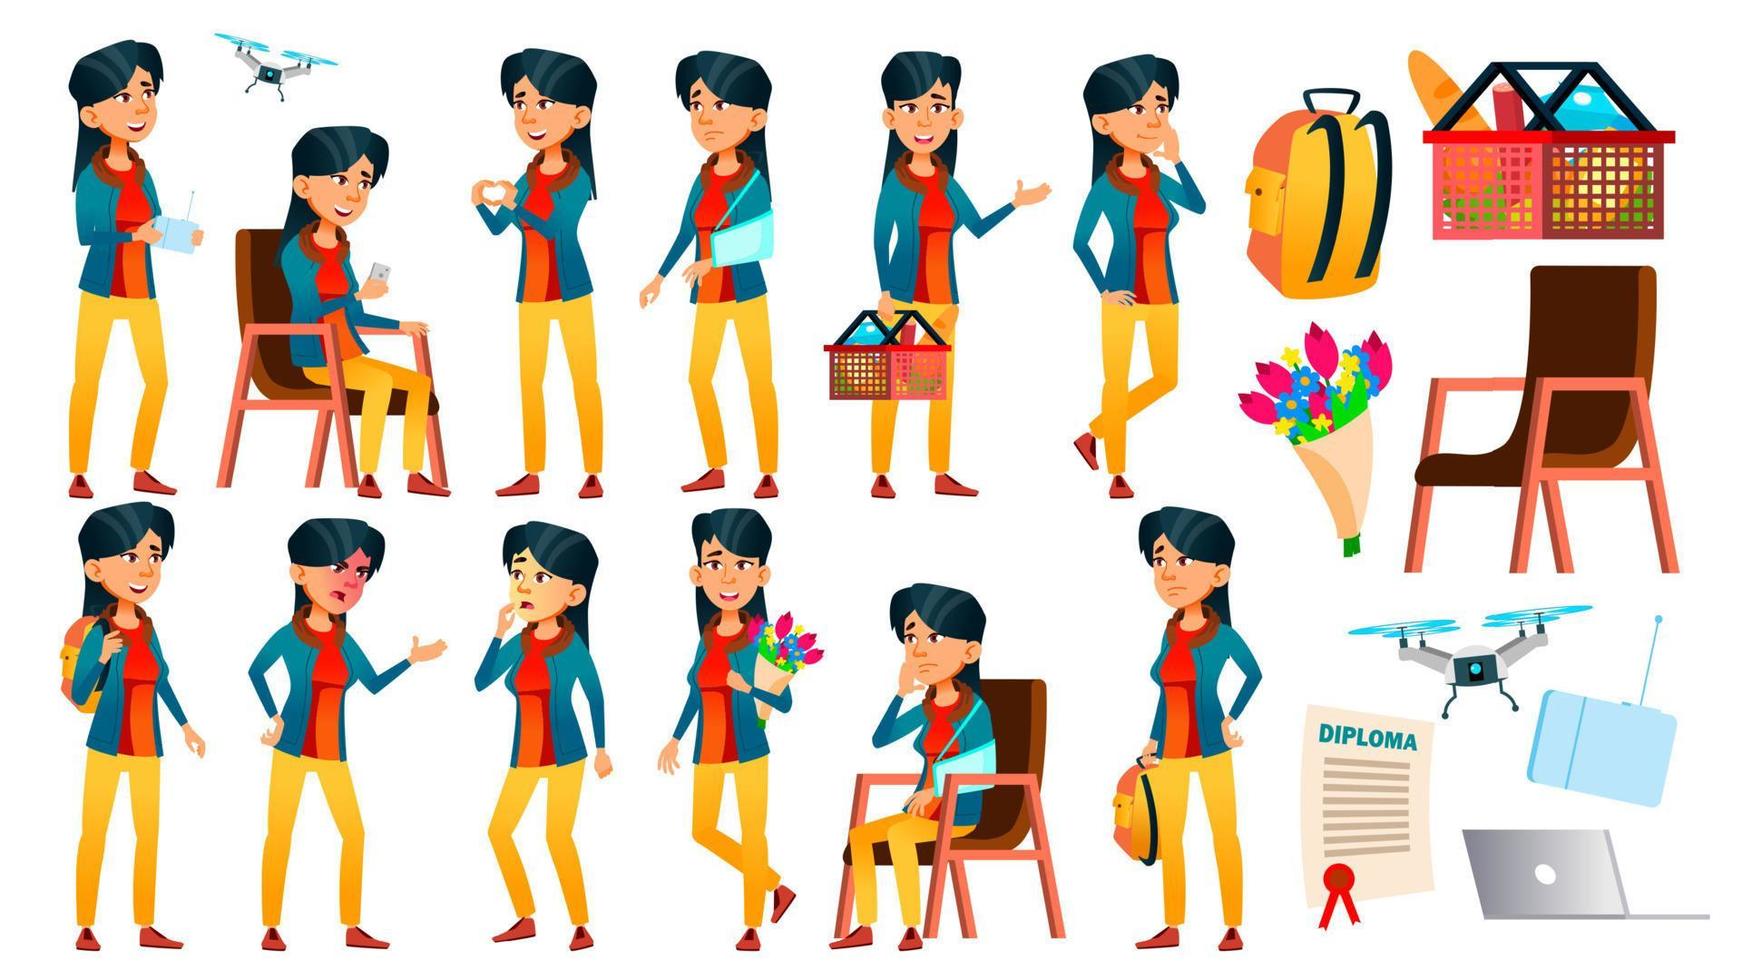 menina adolescente asiática posa vetor definido. caucasiano, positivo. para apresentação, impressão, design de convite. ilustração isolada dos desenhos animados